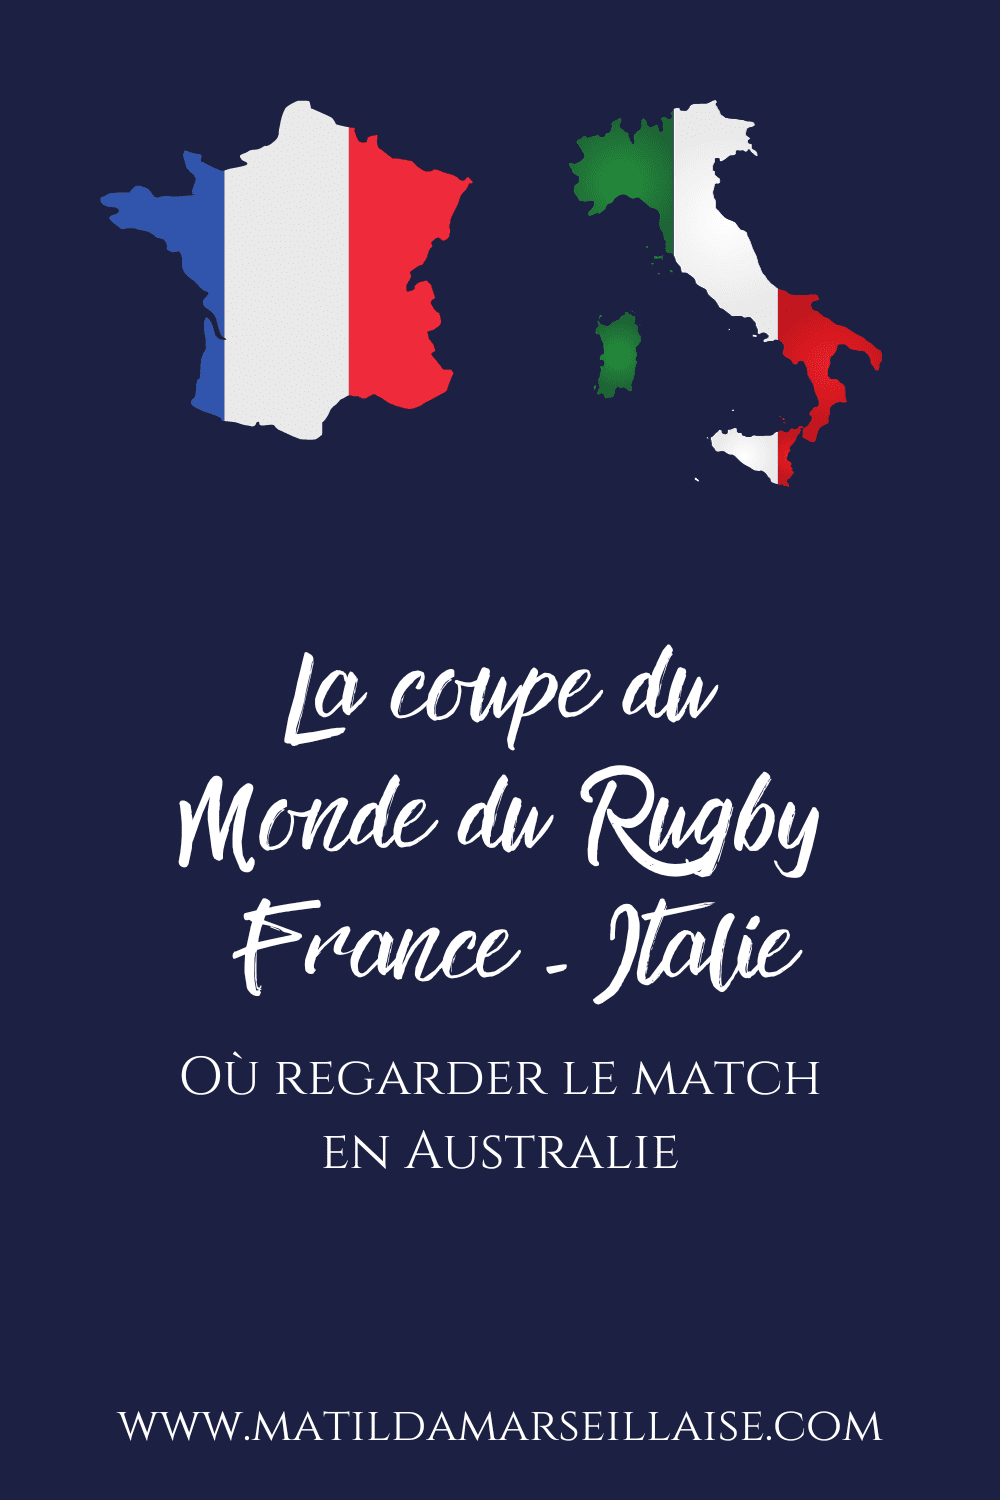 France - Italie en Australie